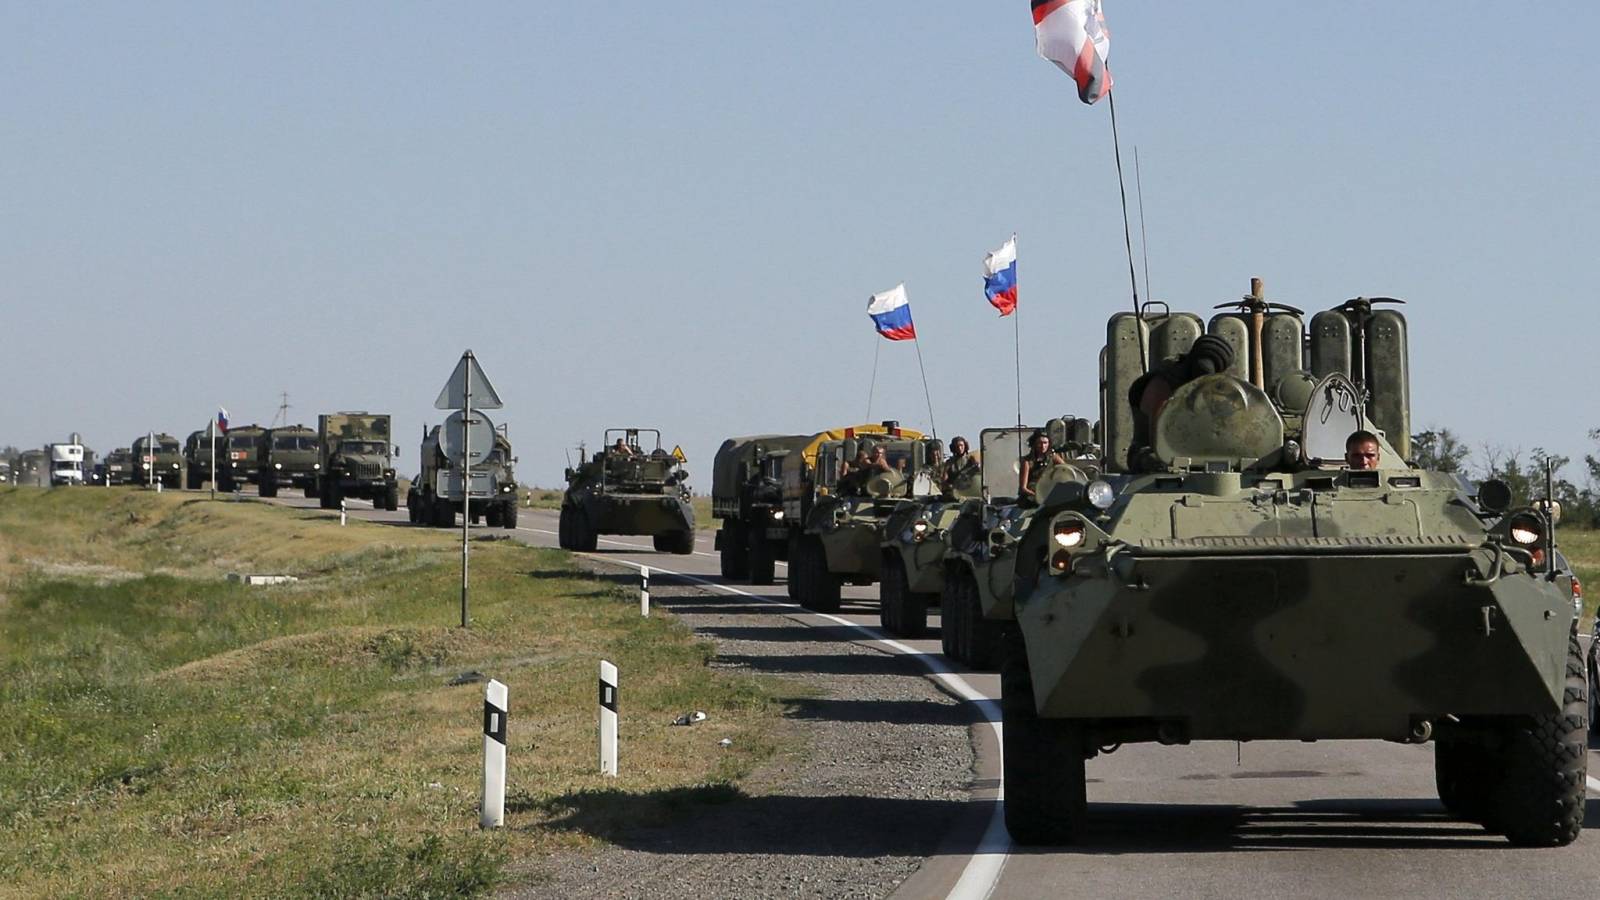 VIDEO Venäjän armeijan uusi sotilassaattue valmistautui saapumaan Ukrainaan